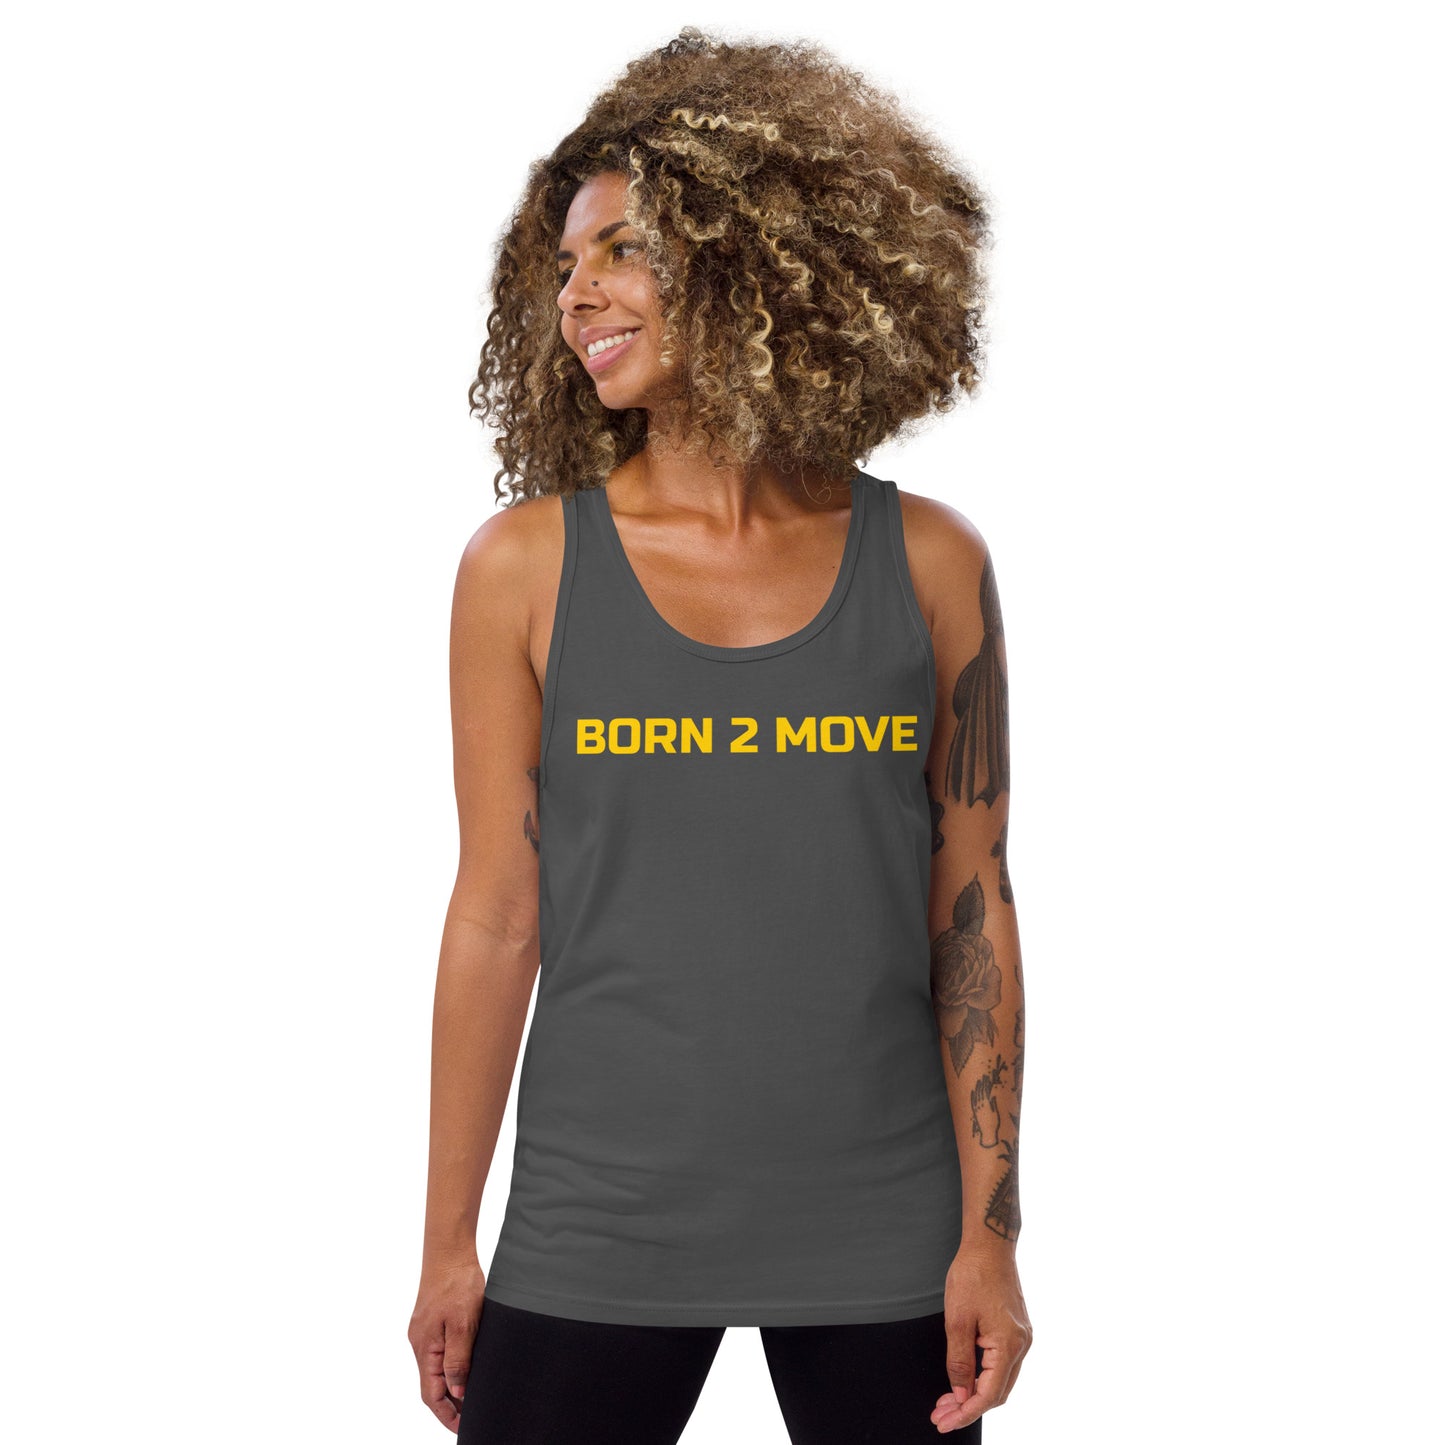 Yellow Logo "Born 2 Move" & "B" Tank Top